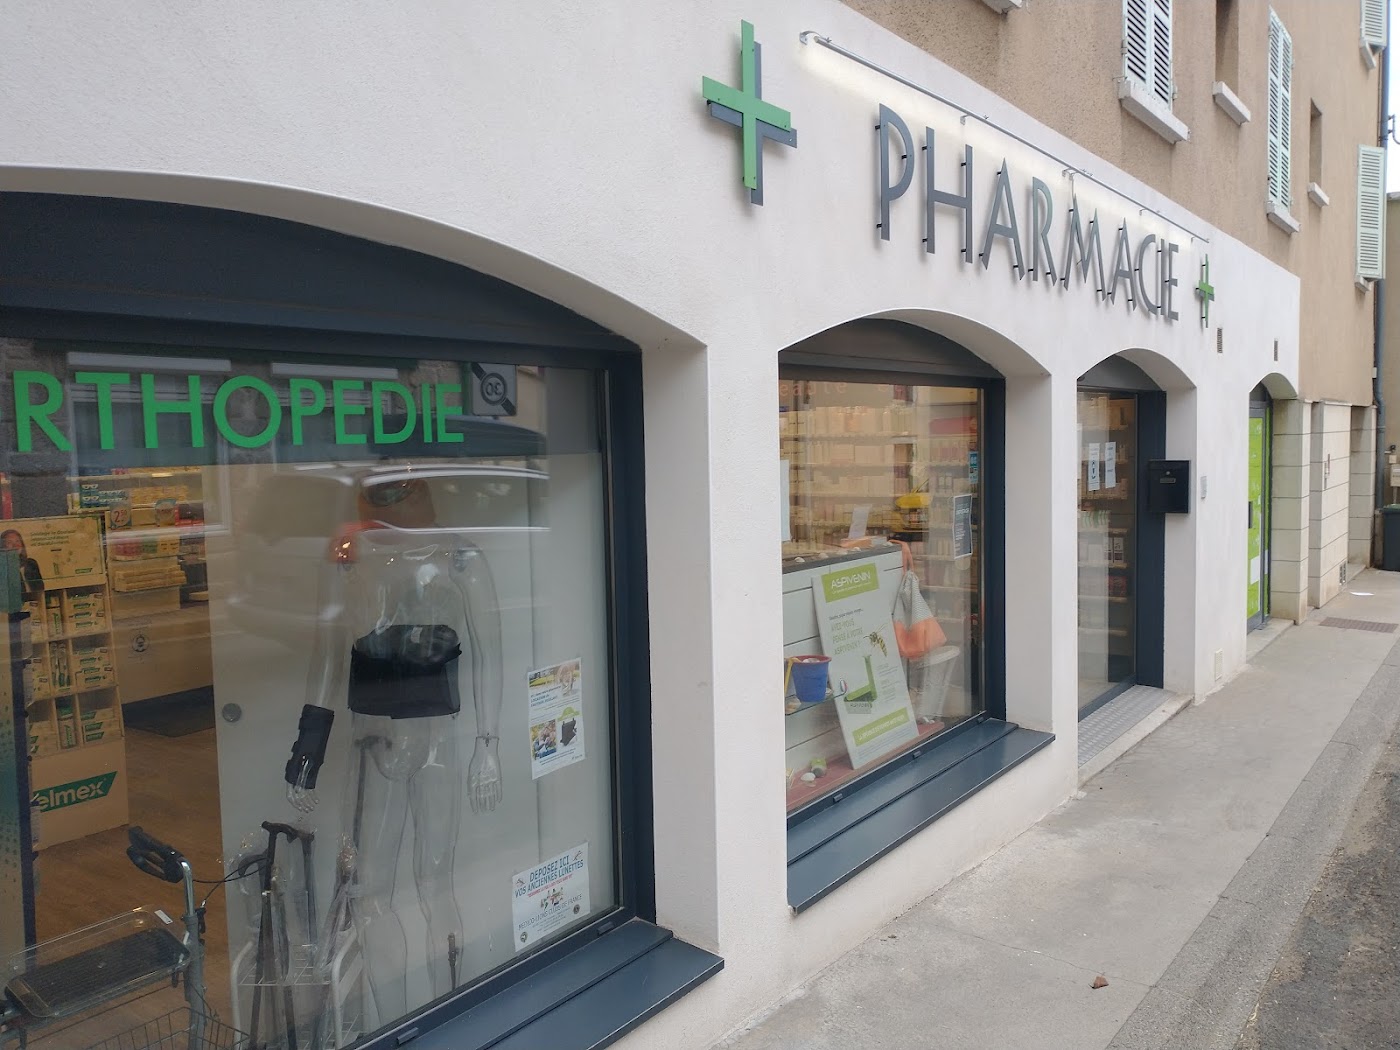 Pharmacie de Saint-Rémy sur Durolle 💊 Totum